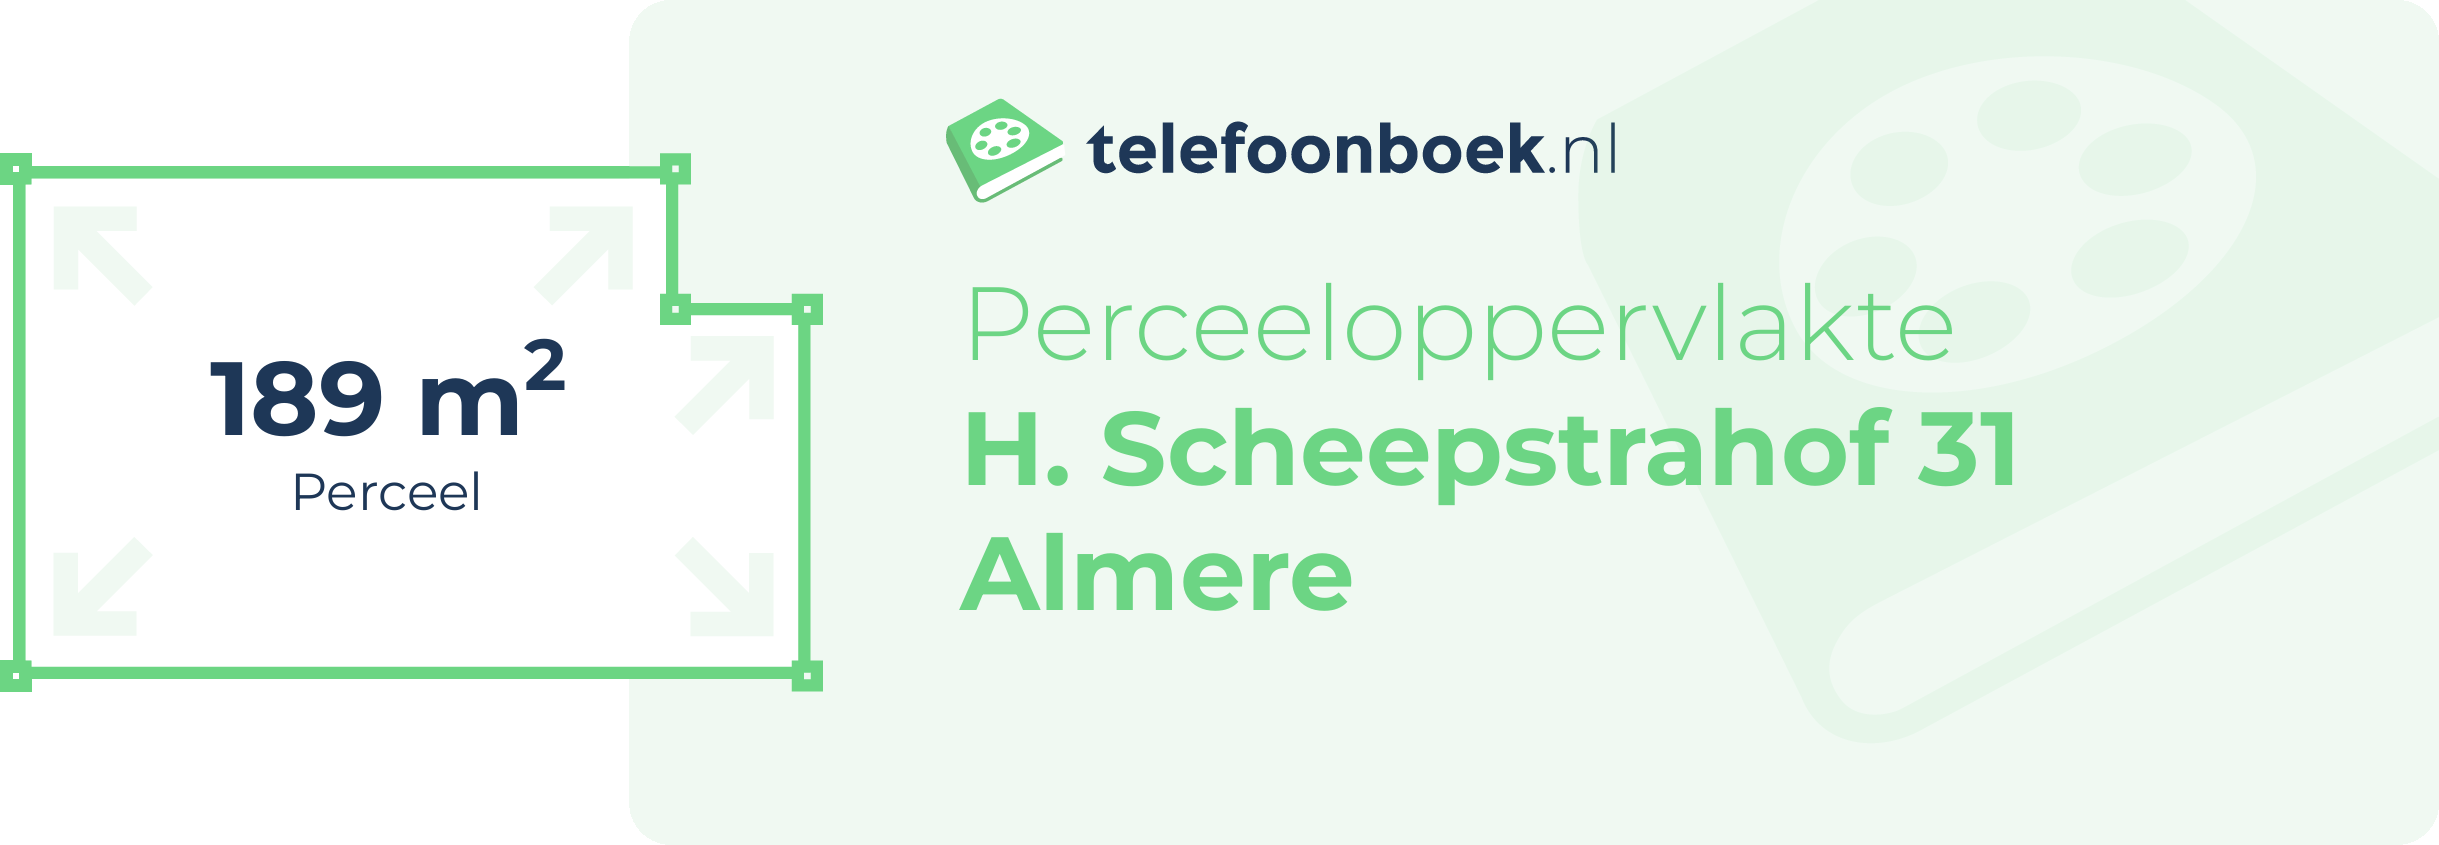 Perceeloppervlakte H. Scheepstrahof 31 Almere